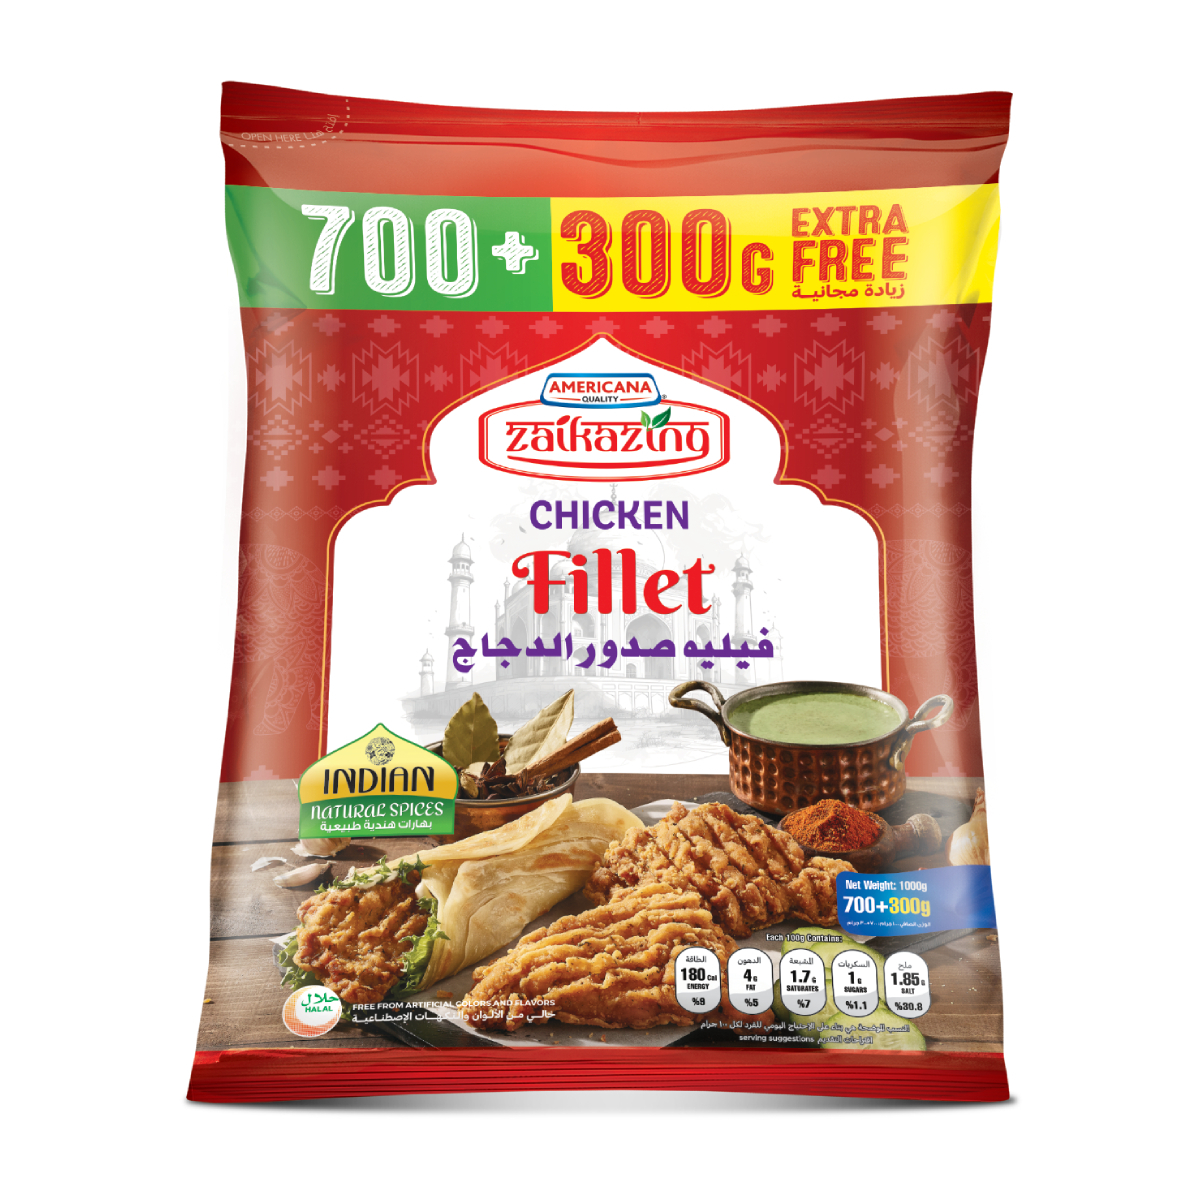 Buy Americana Zaikazing Chicken Fillet 700 g + 300 g Online at Best Price | Zingers | Lulu UAE in UAE